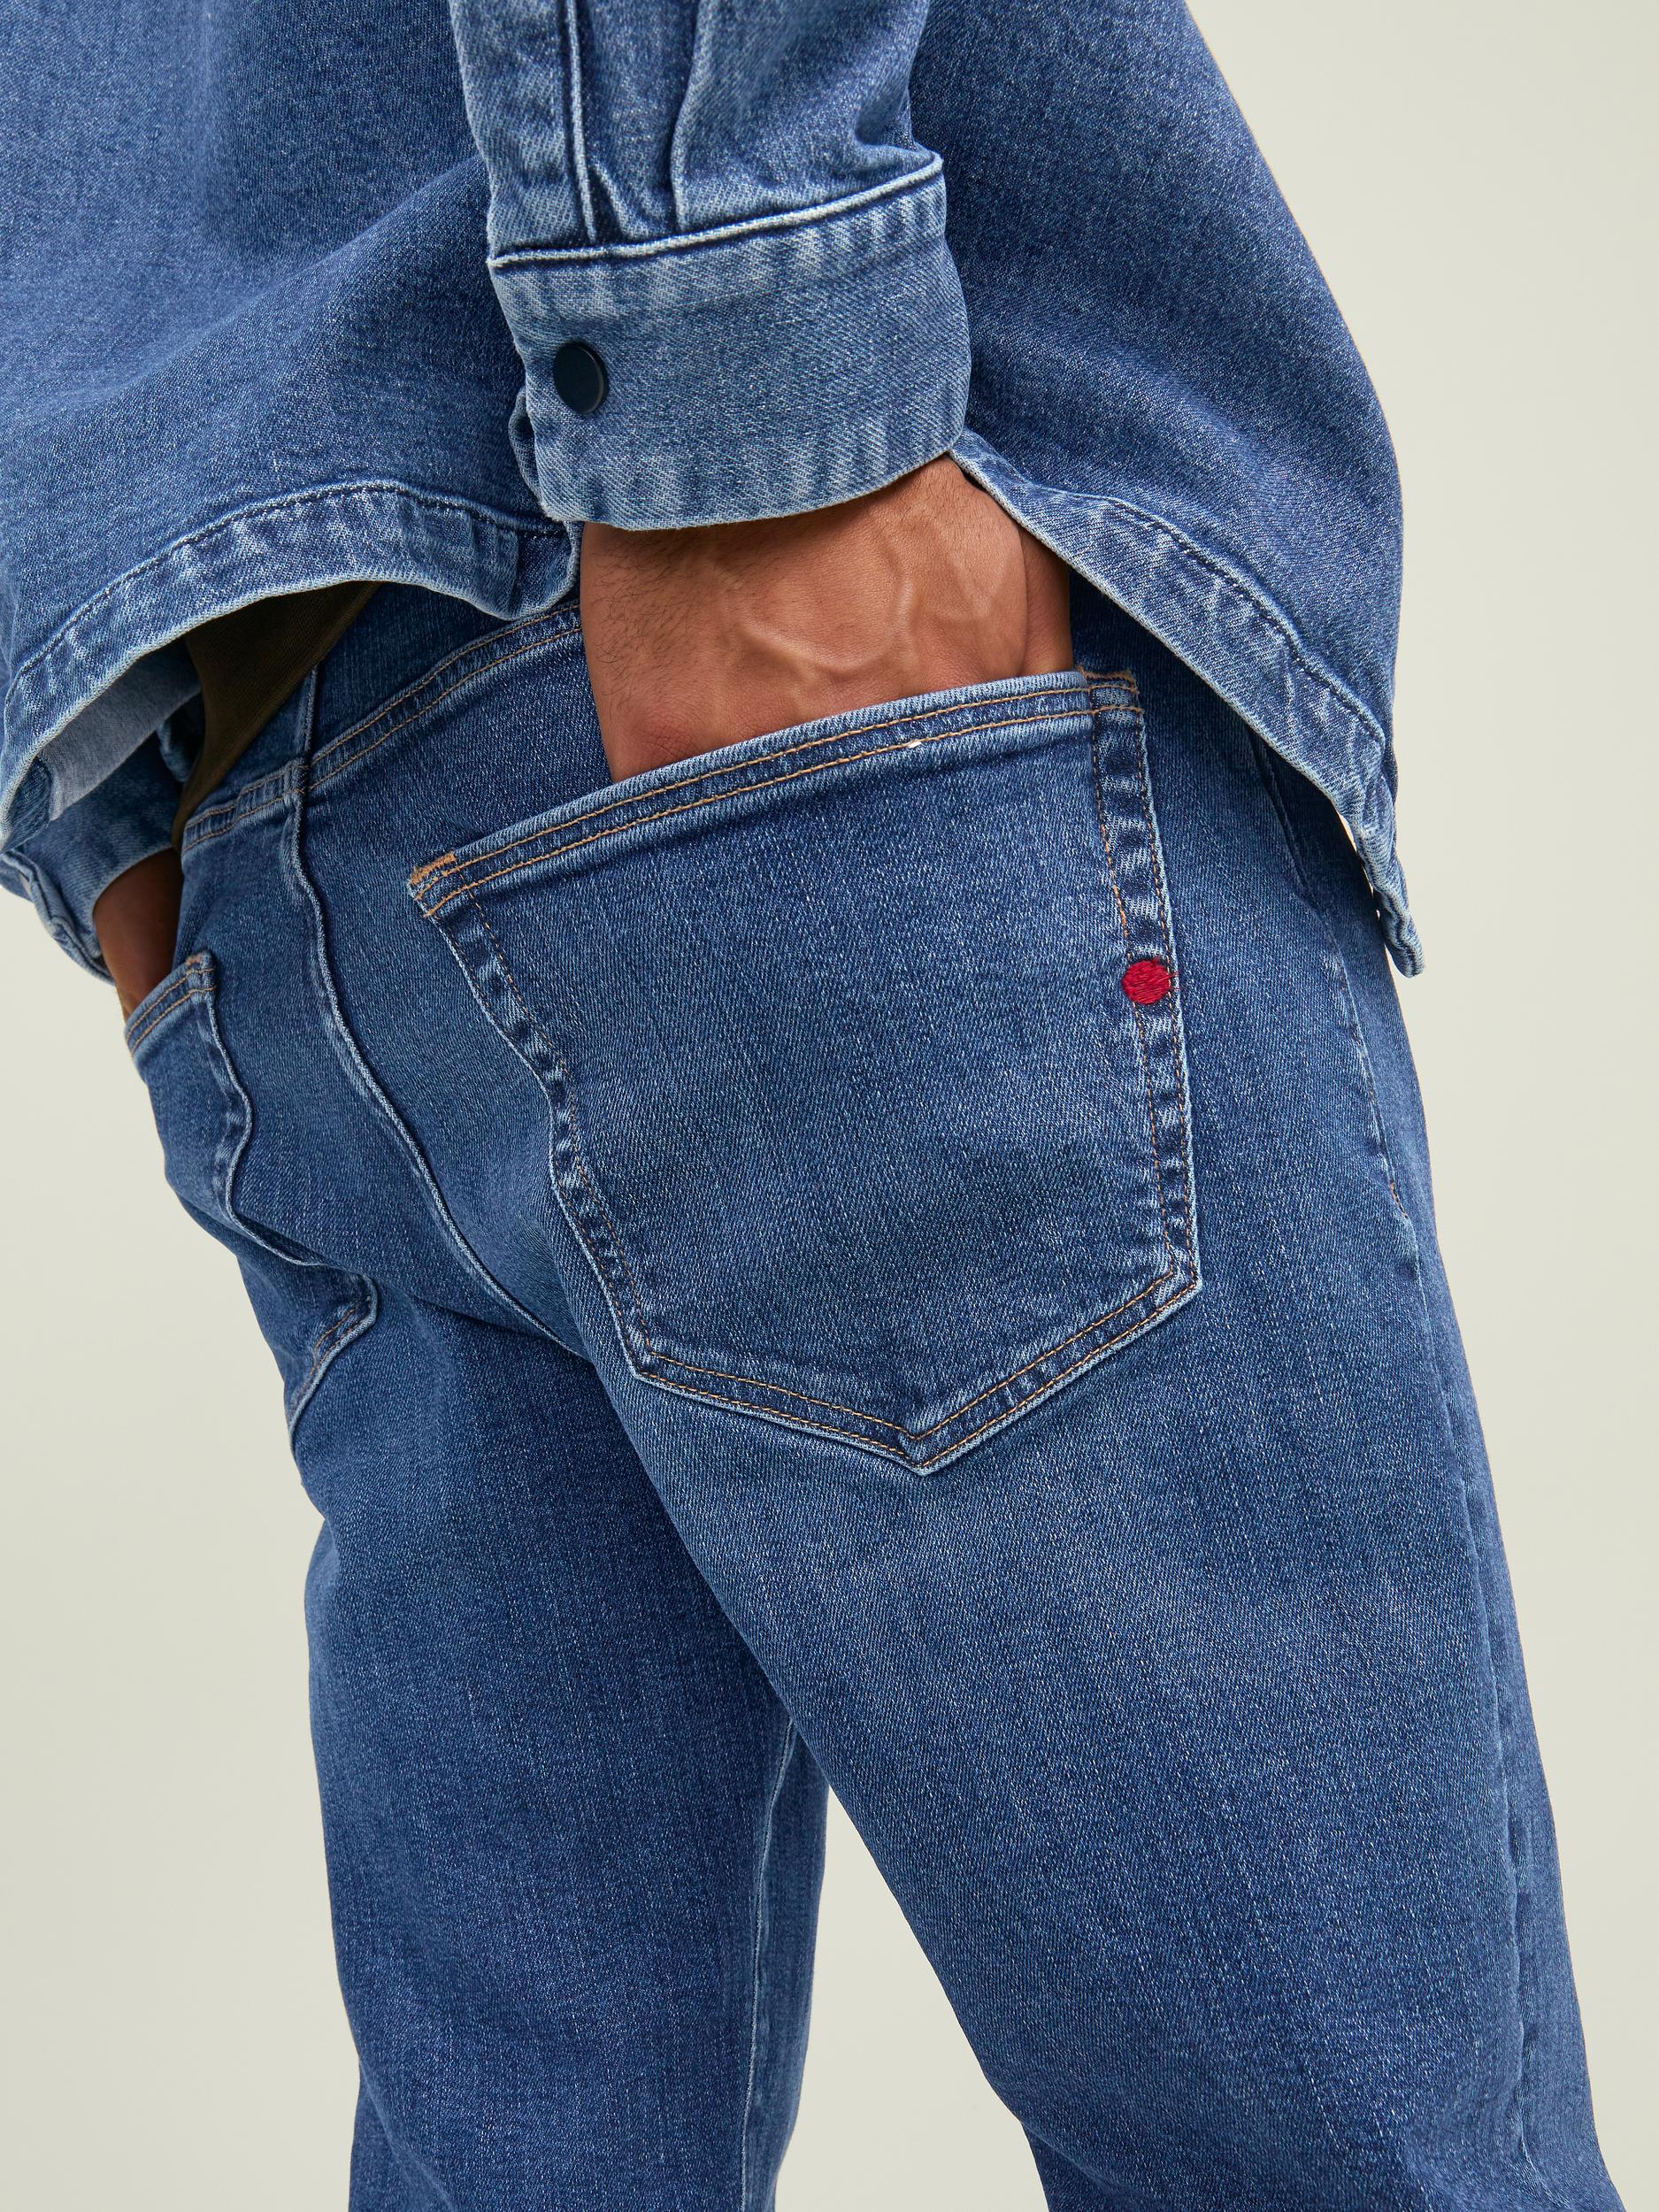 Men's Royal Comfort 811 Jeans-Back Pocket Front View